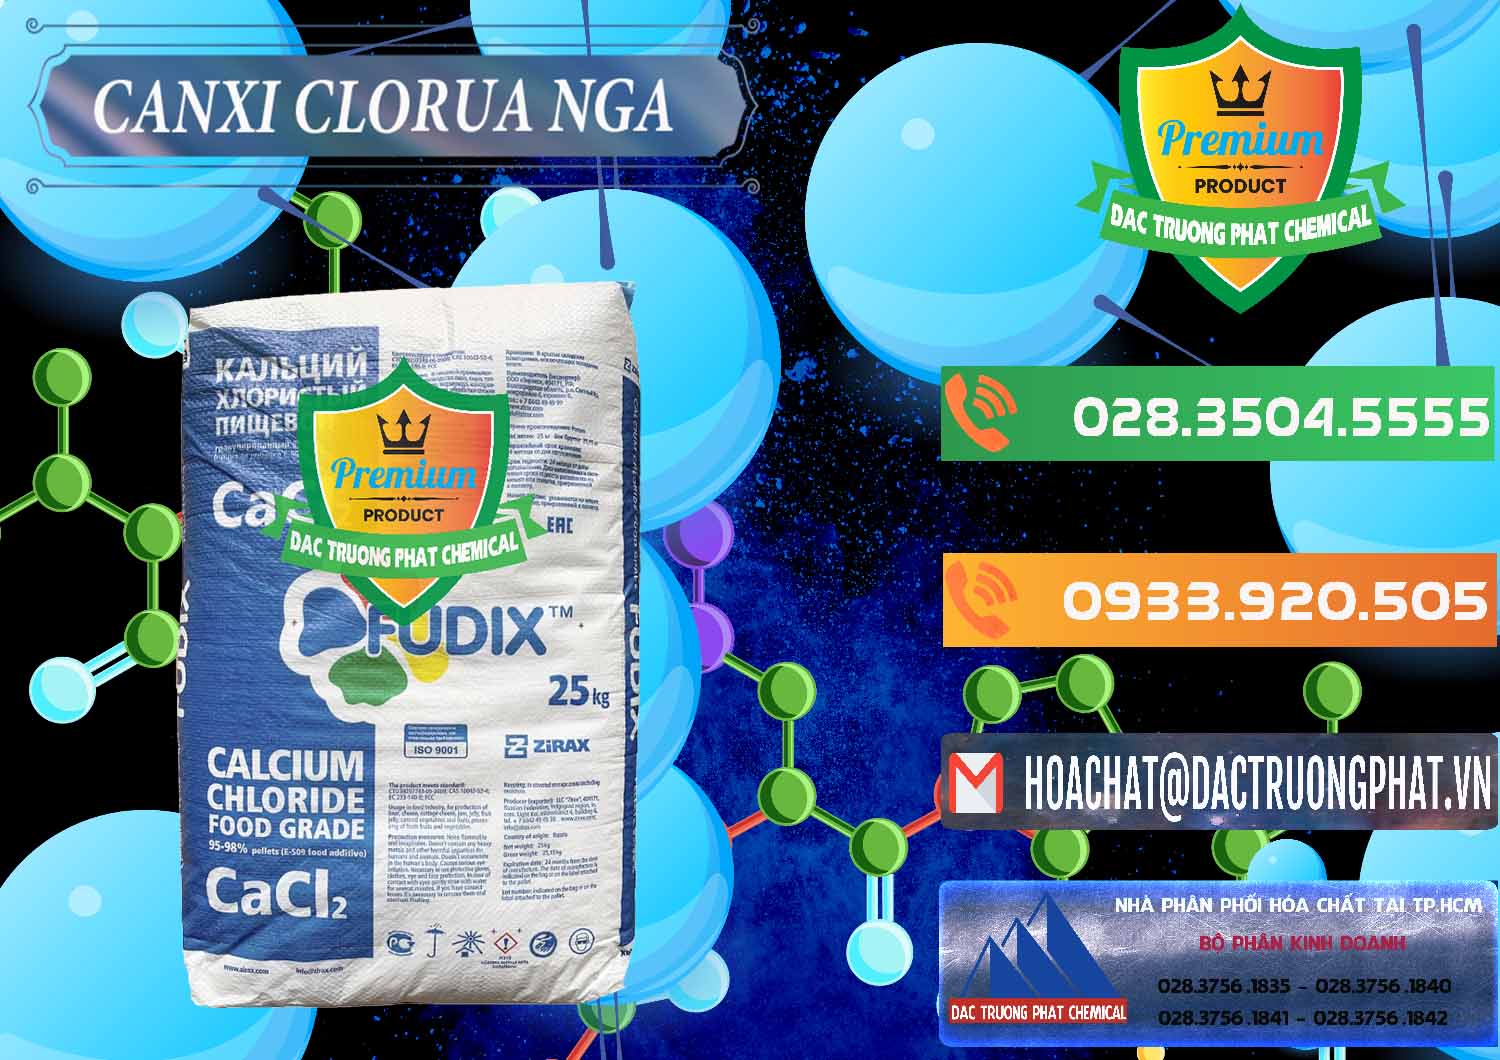 Cty nhập khẩu và bán CaCl2 – Canxi Clorua Nga Russia - 0430 - Nơi cung ứng _ phân phối hóa chất tại TP.HCM - hoachatxulynuoc.com.vn